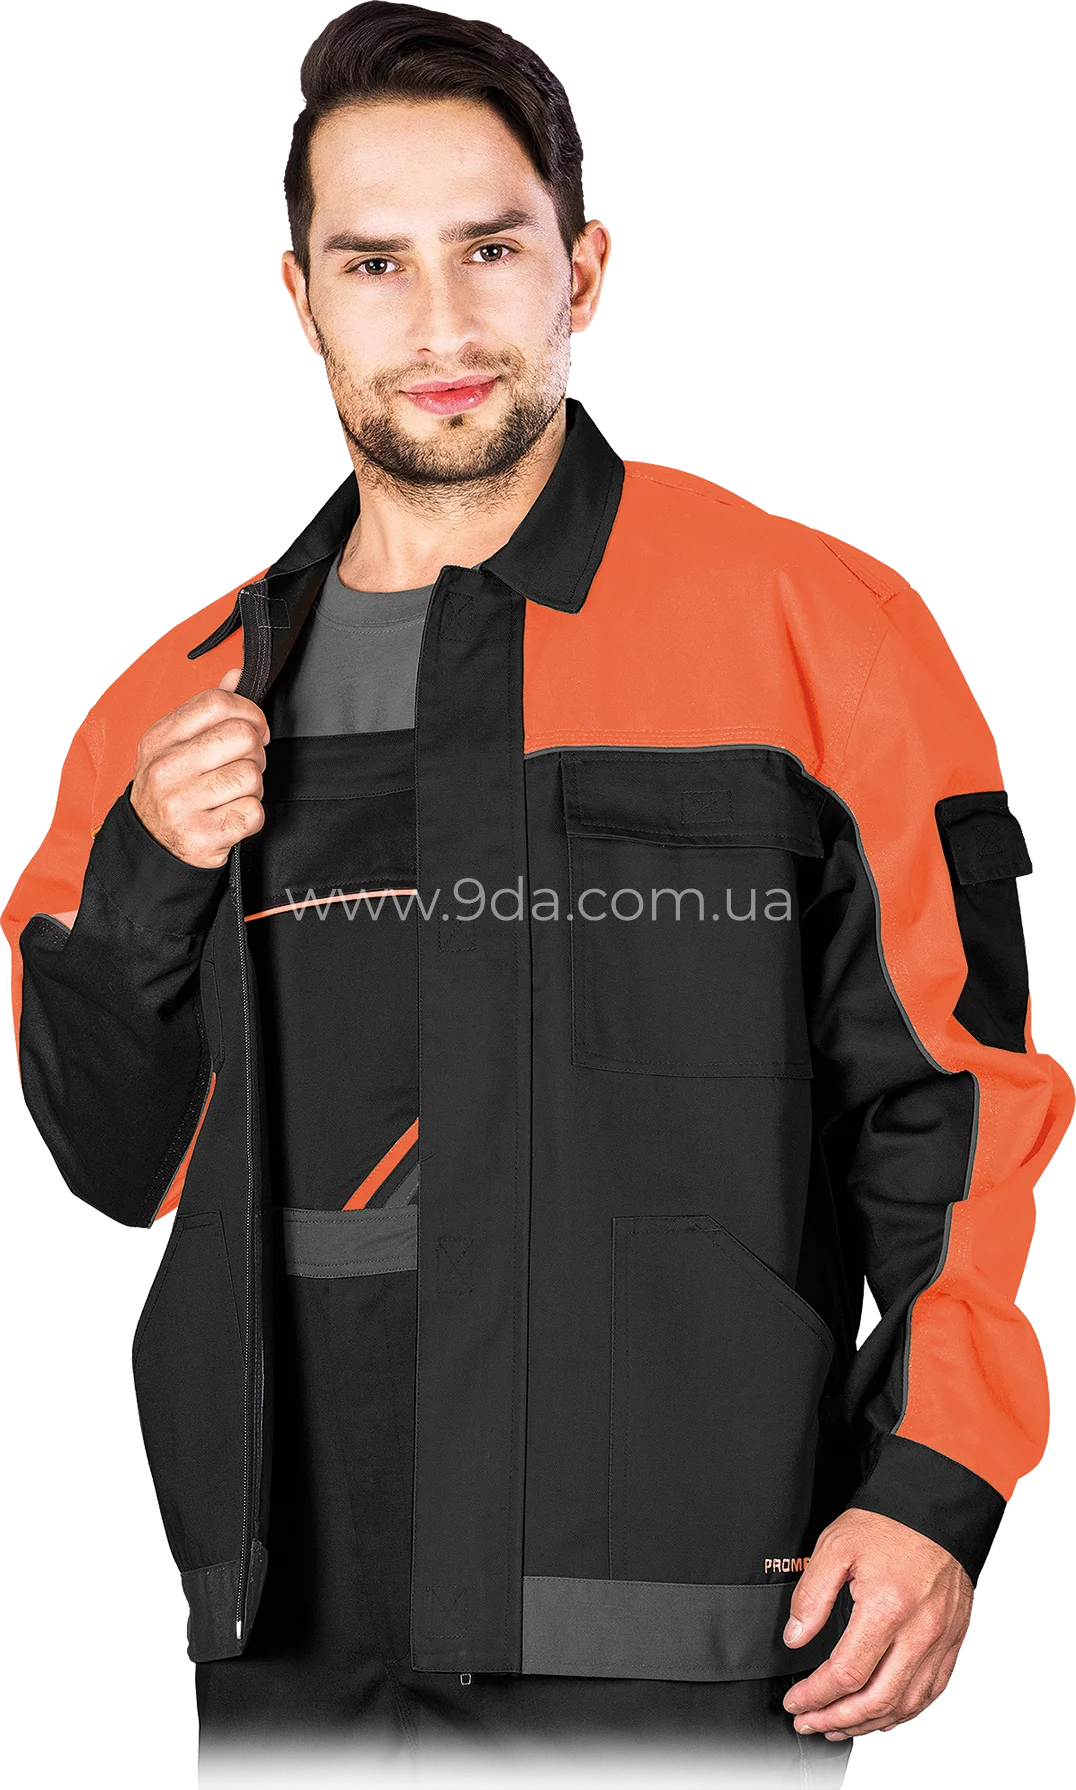 Куртка робоча Pro Master, 65% поліестер, 35% бавовна, 300г/м², чорно-помаранчево-сірий, PRO-J BPS, Reis - 1